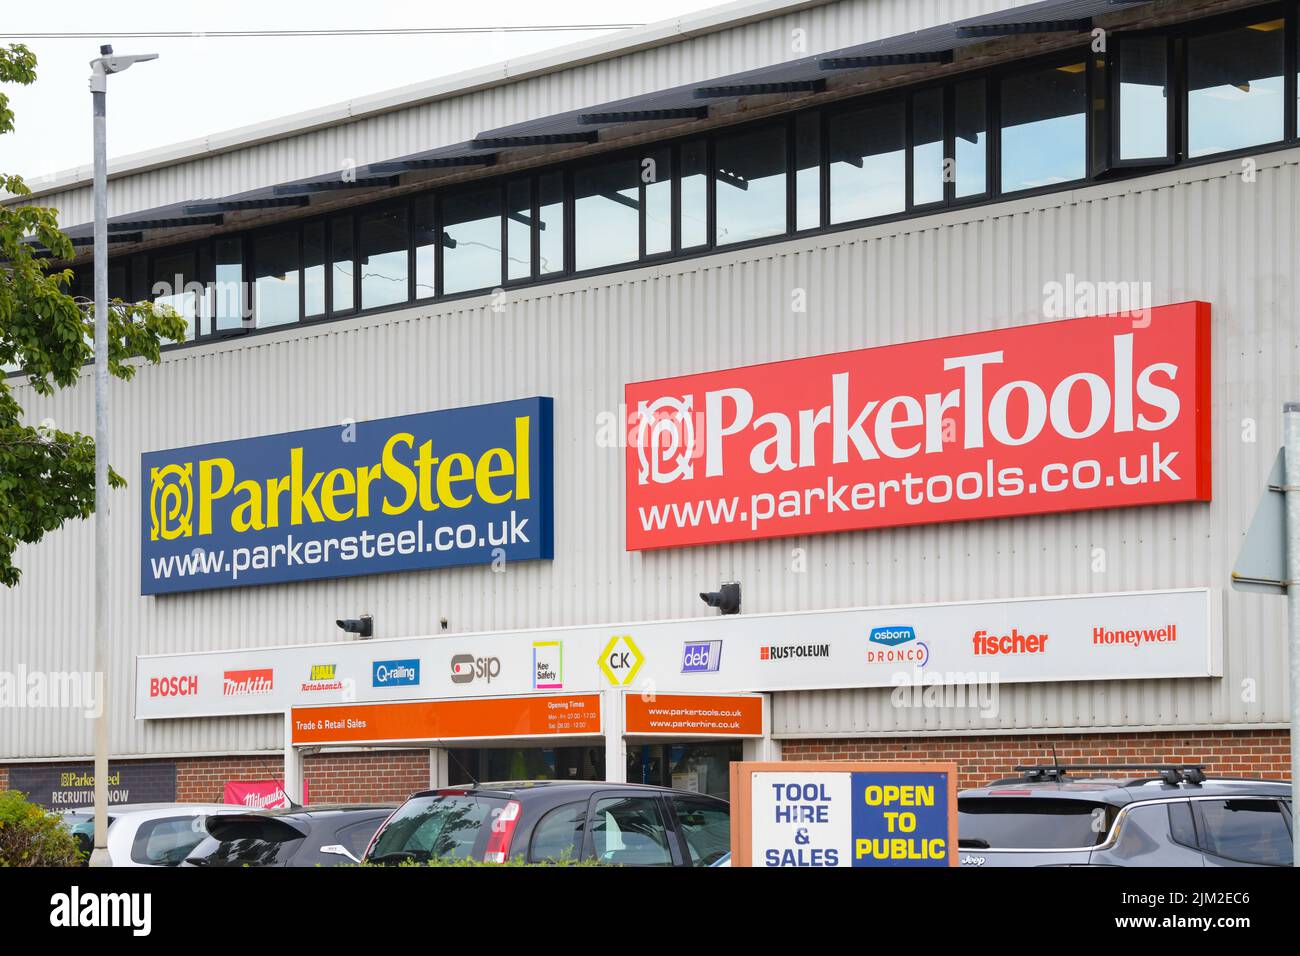 Almacén de ParkerSteel y ParkerTools en Canterbury, Inglaterra, Reino Unido Foto de stock